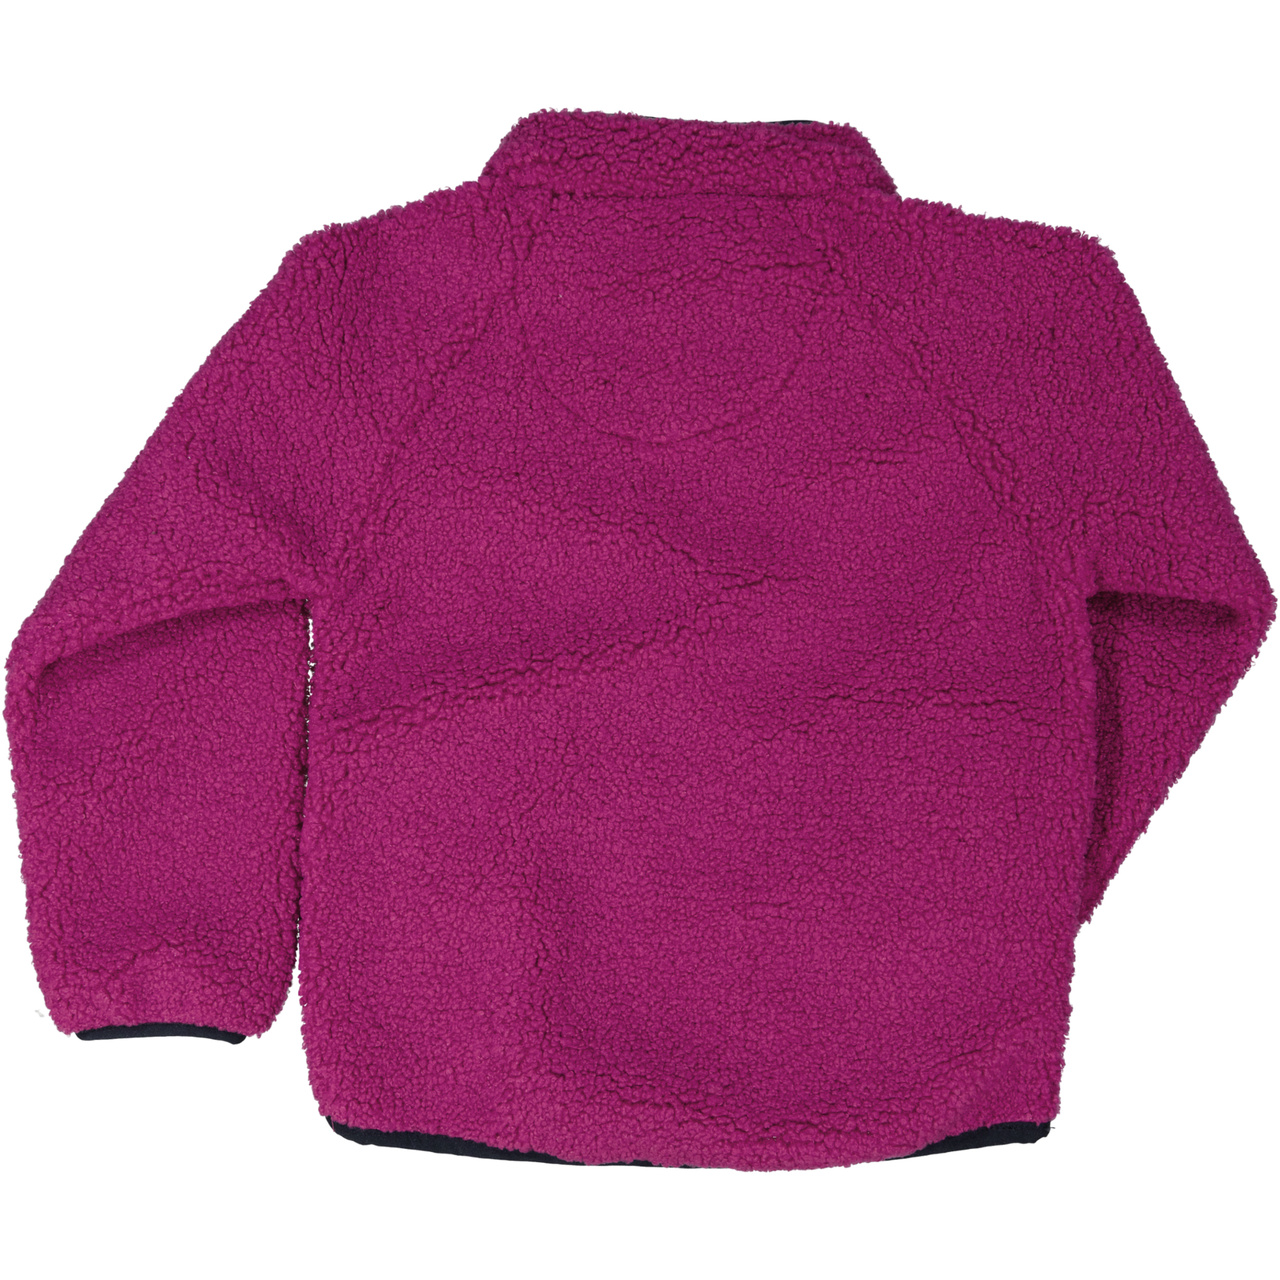 Pile jacket Deep purple  98/104